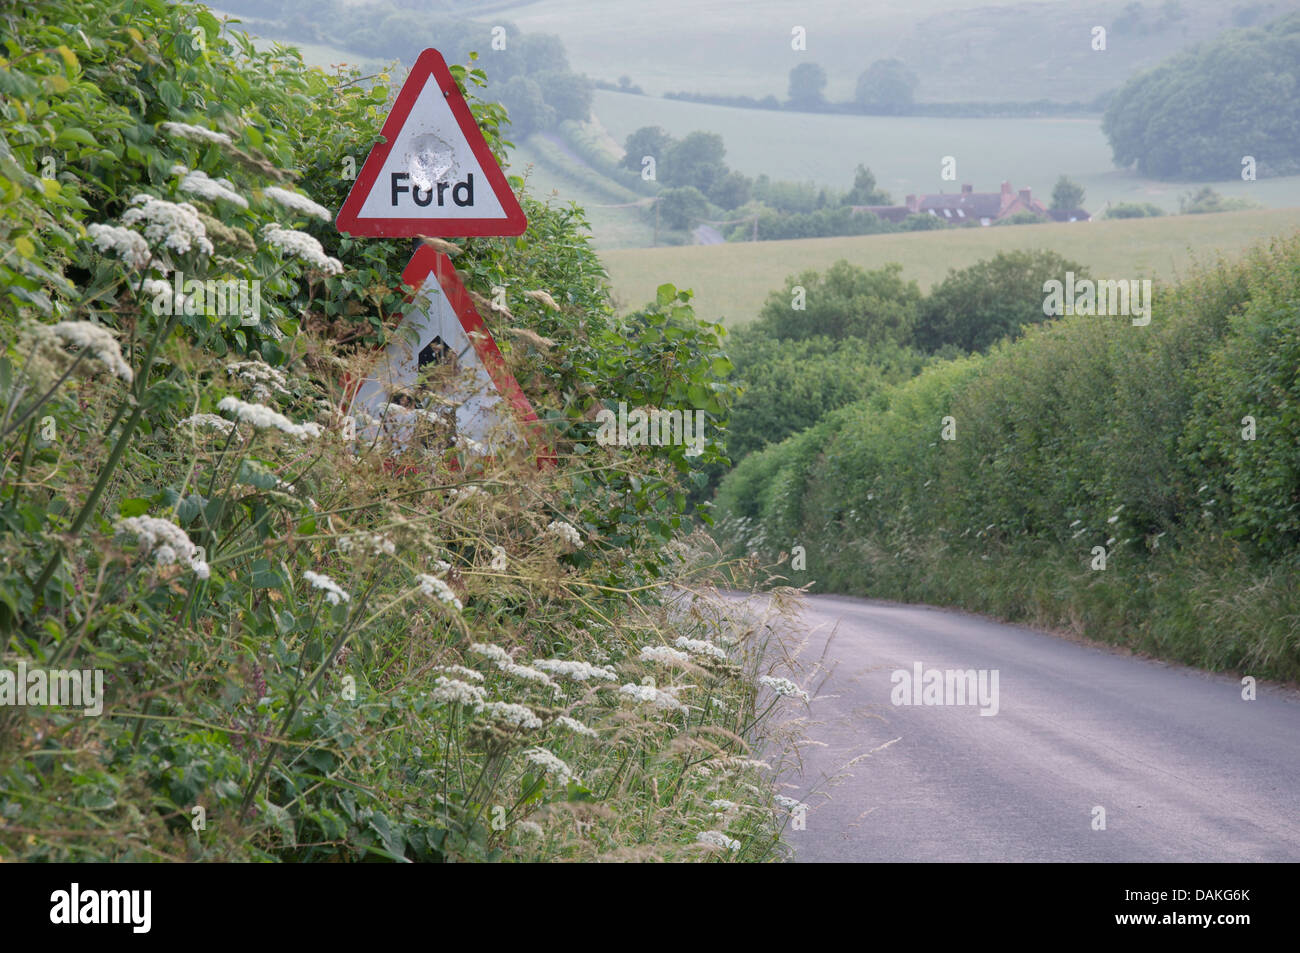 Englische Landschaft. Einen schmalen Feldweg Dorset mit hohen grünen Hecken, warnt ein Schild vor einer Furt. Jemand hat es einen Topf Schuss betrachtet. Stockfoto